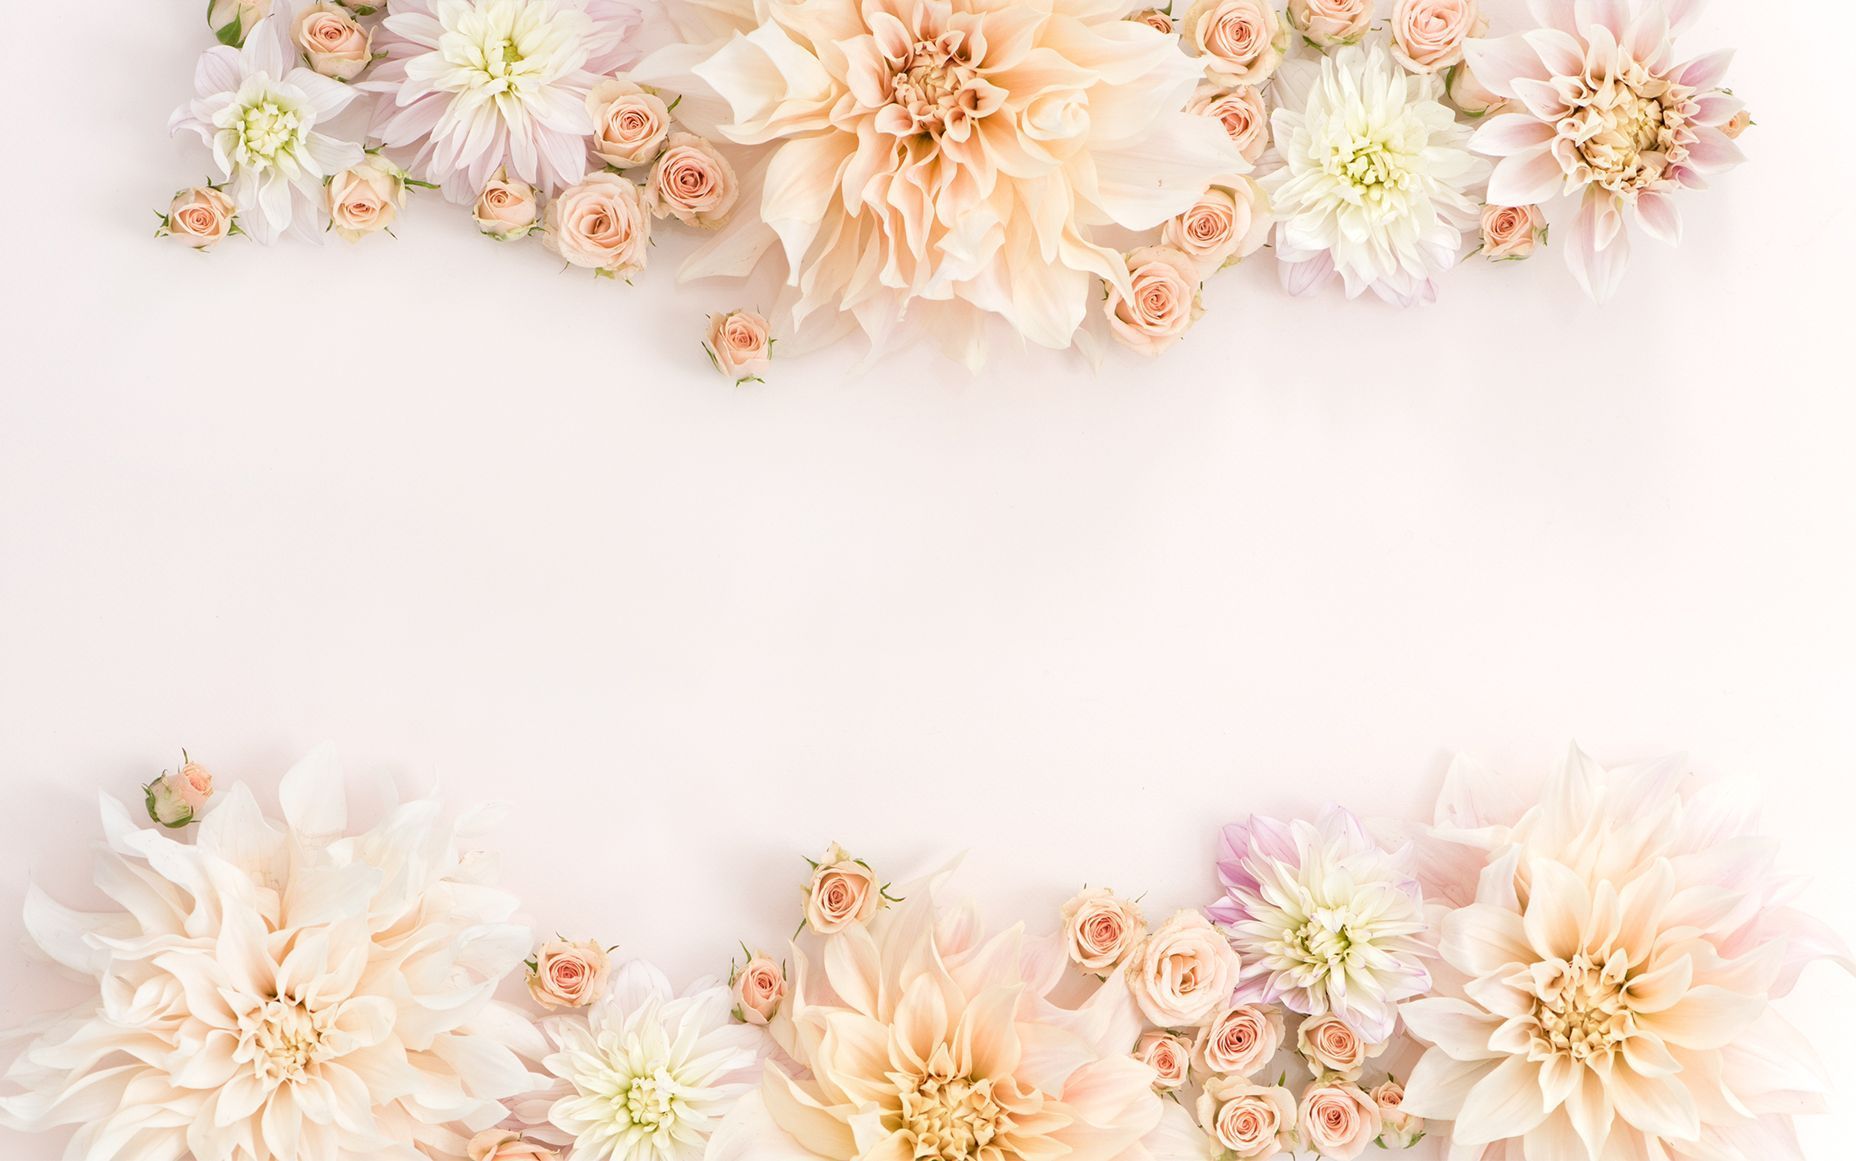 Rose gold wallpaper, flower, wedding, bouquet